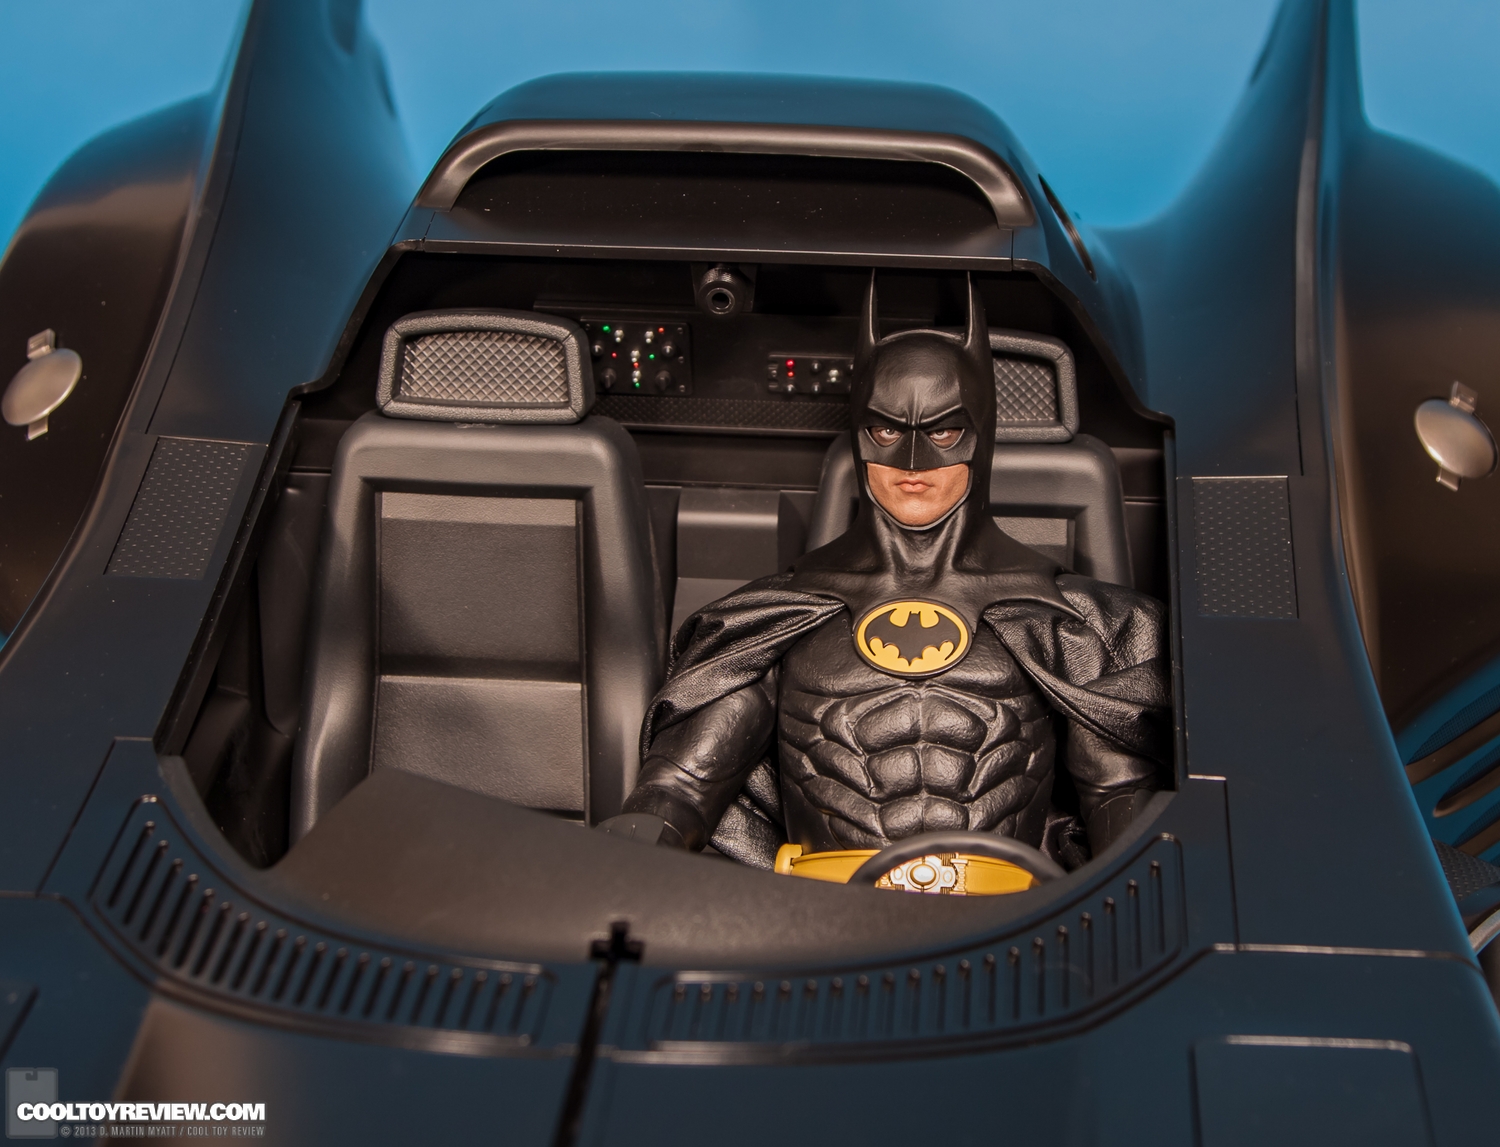 Batman-1989-Burton-Batmobile-Hot-Toys-042.jpg